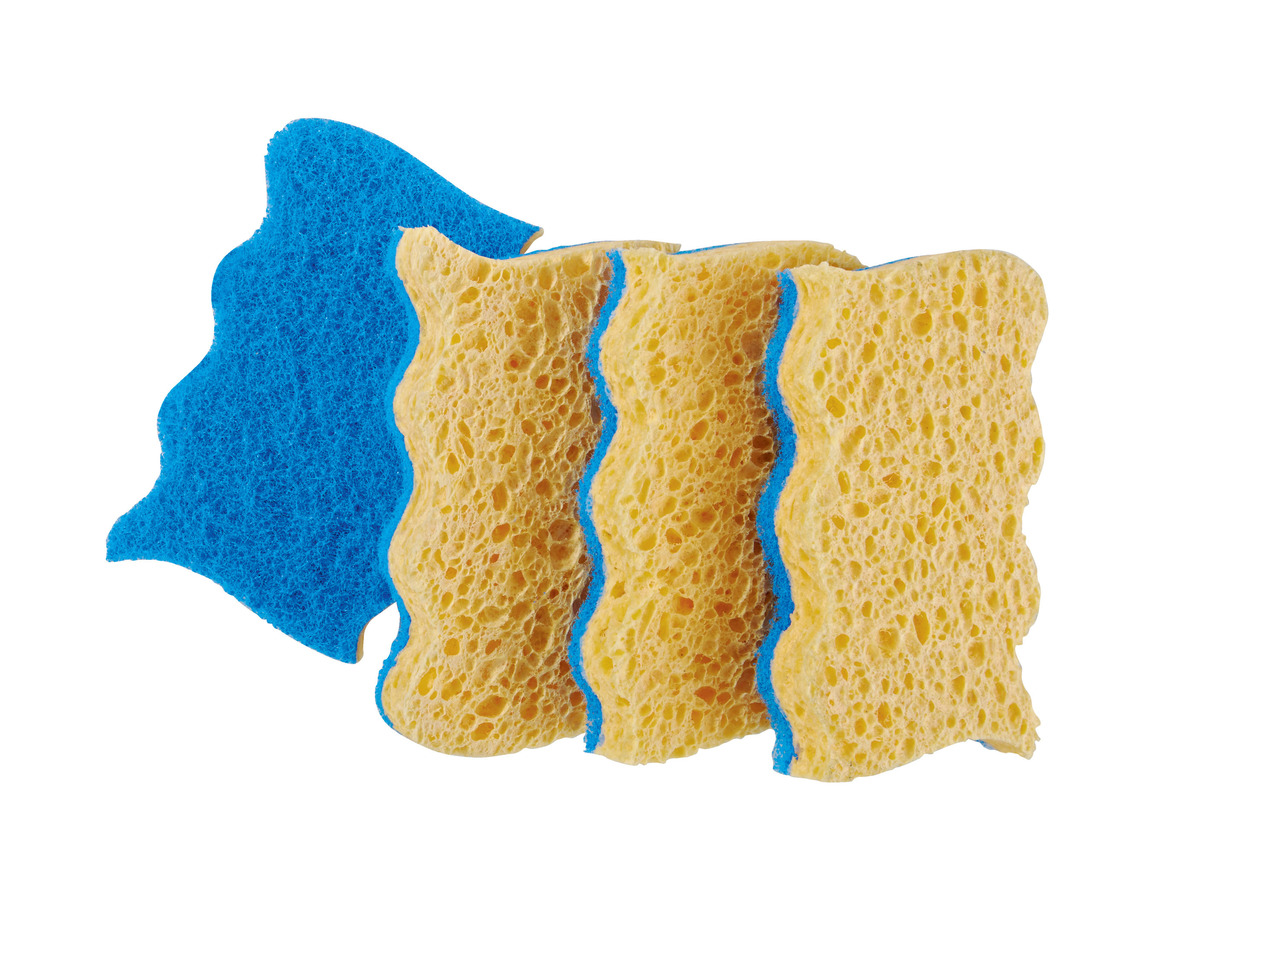 VILEDA Cleaning Cloth / Sponge